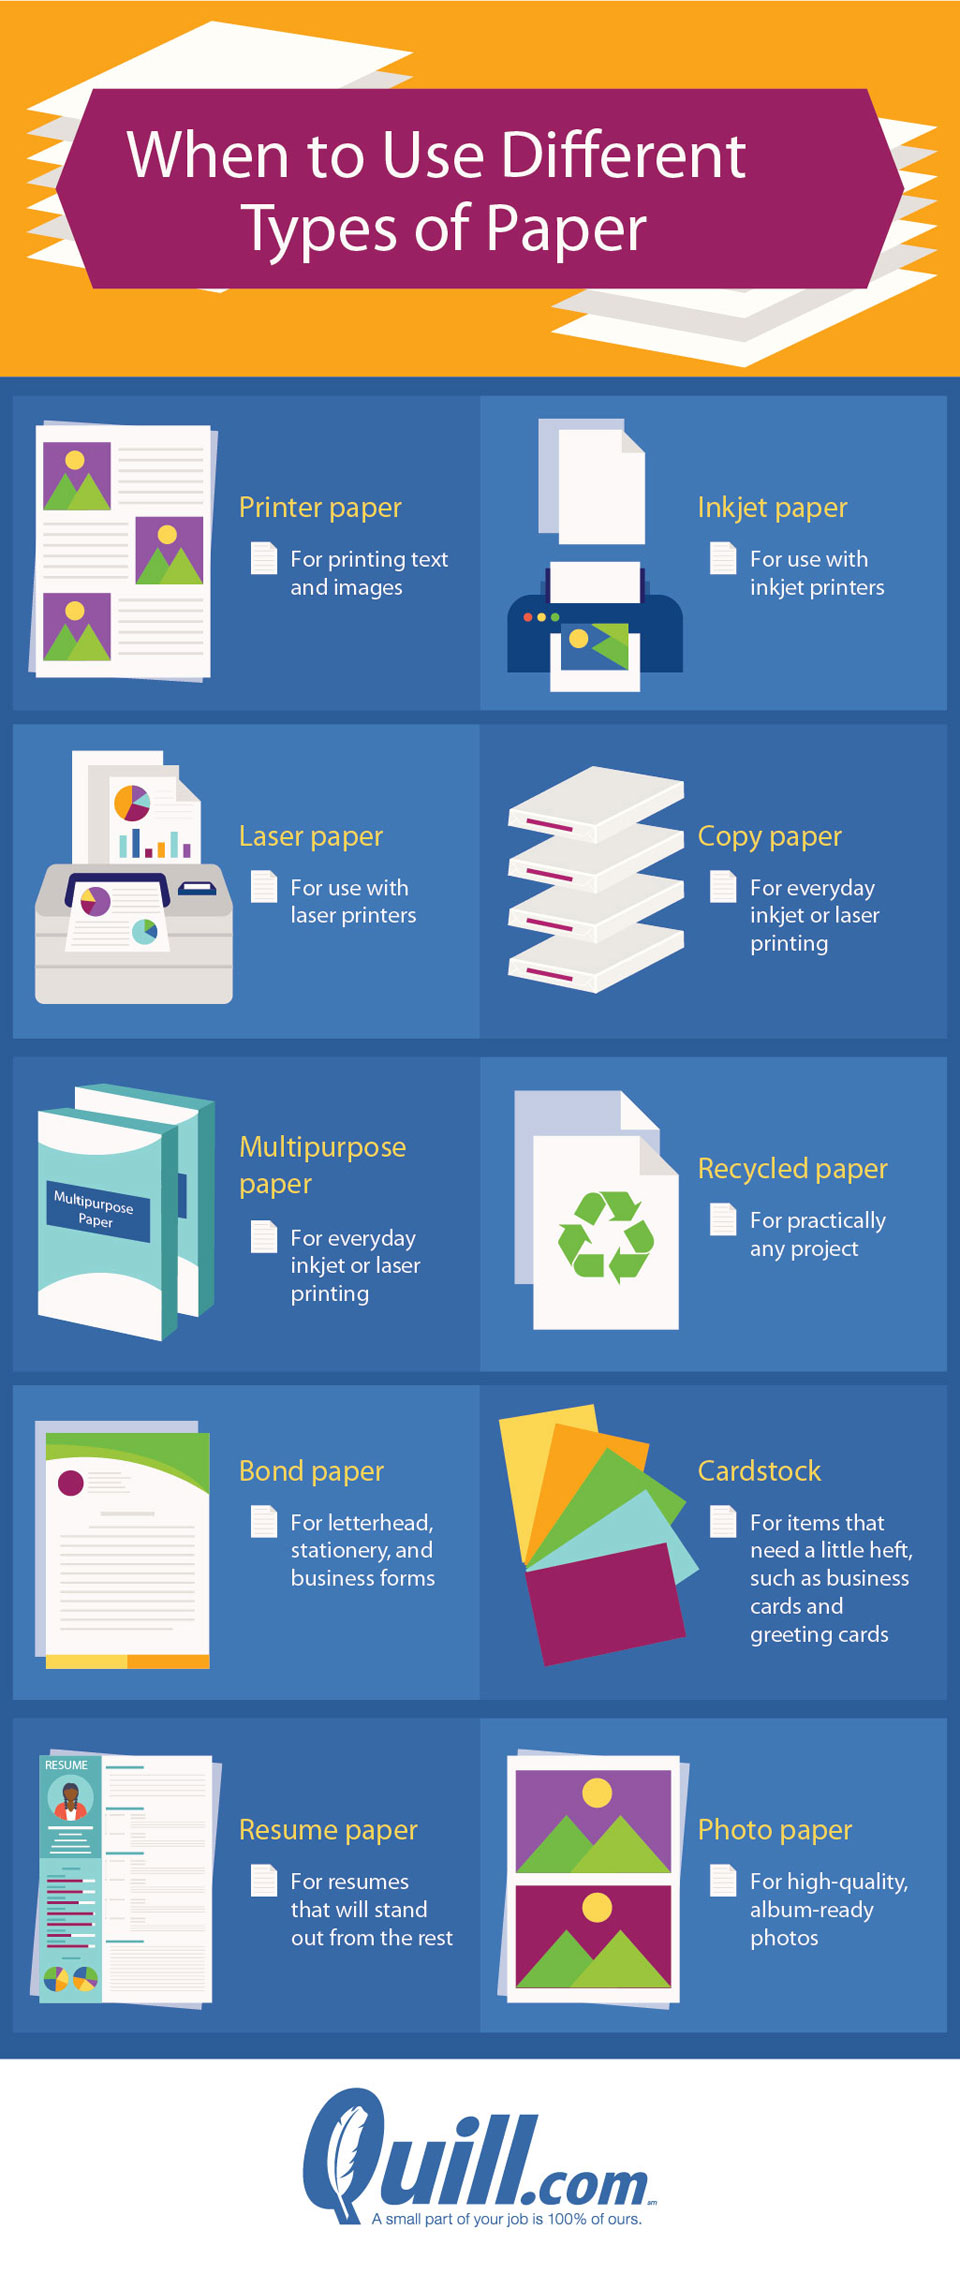 When to use multipurpose paper vs. copy paper